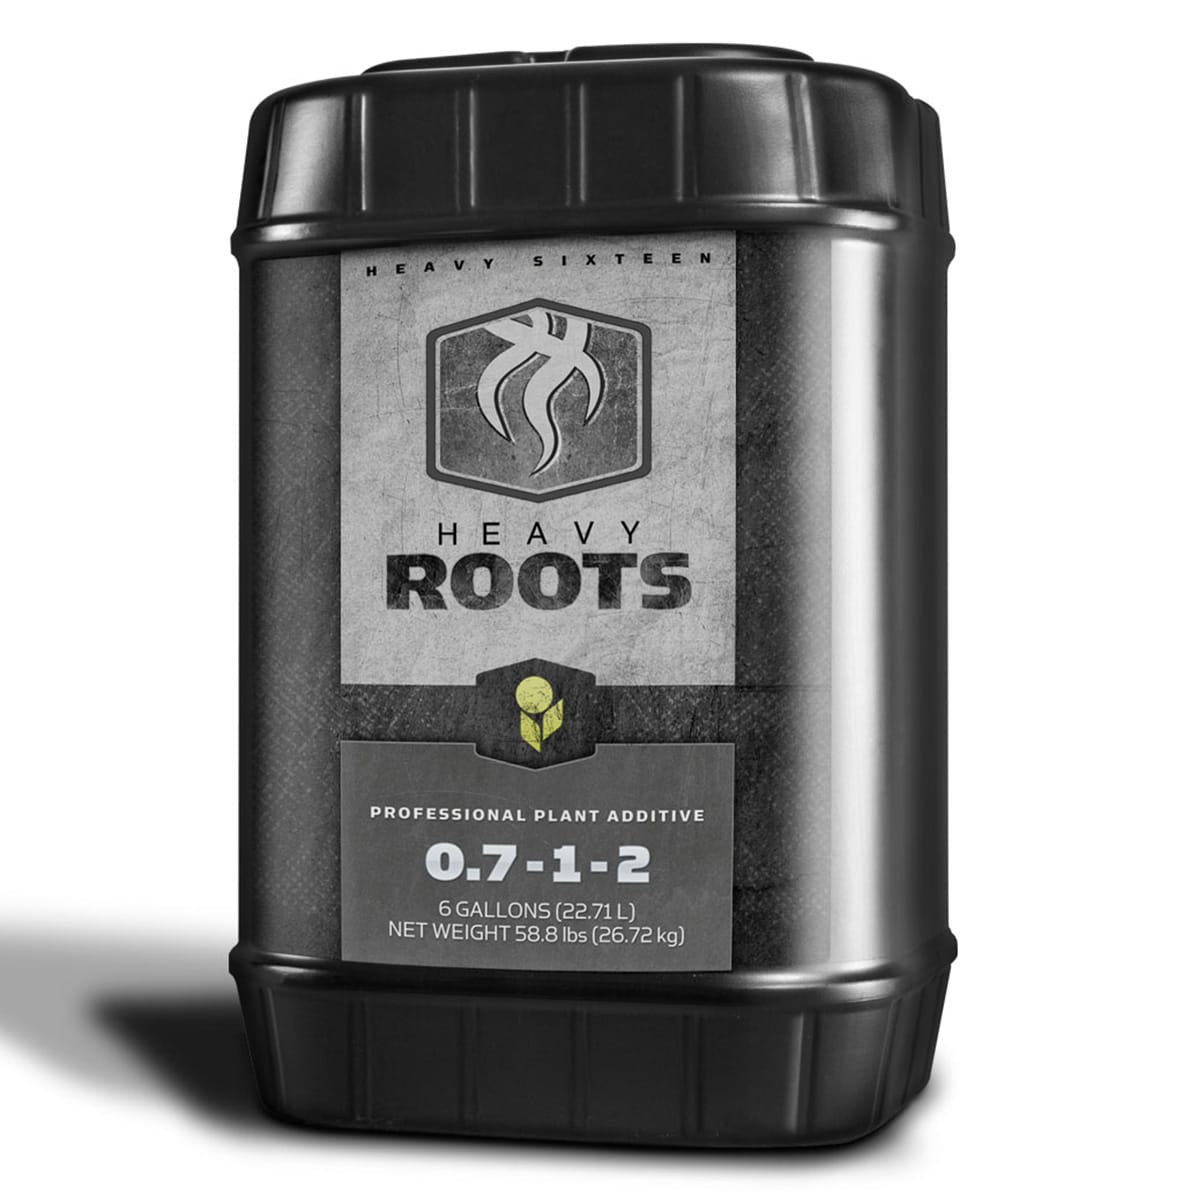 Heavy 16 Roots 6 Gallon